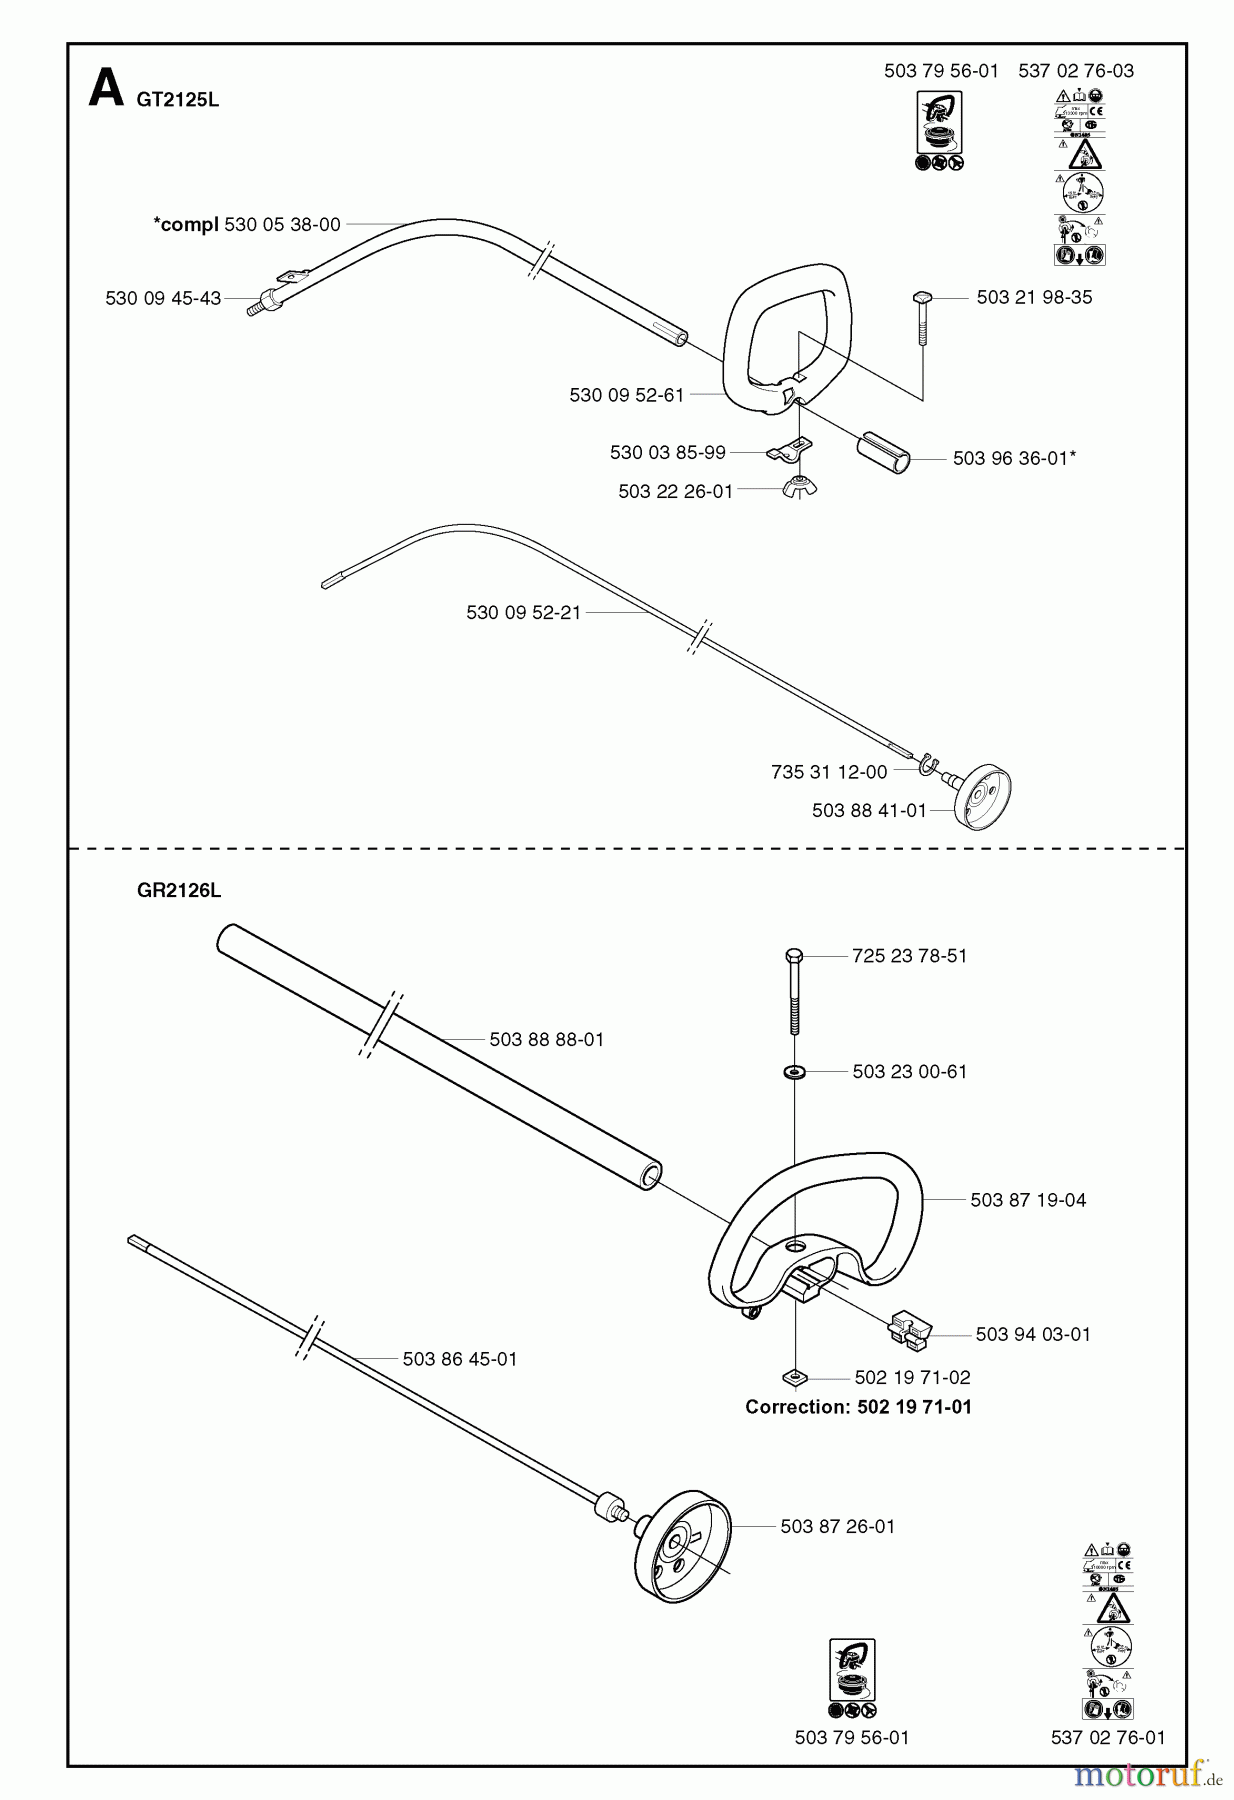  Jonsered Motorsensen, Trimmer GR2126L - Jonsered String/Brush Trimmer (2002-01) SHAFT HANDLE #1